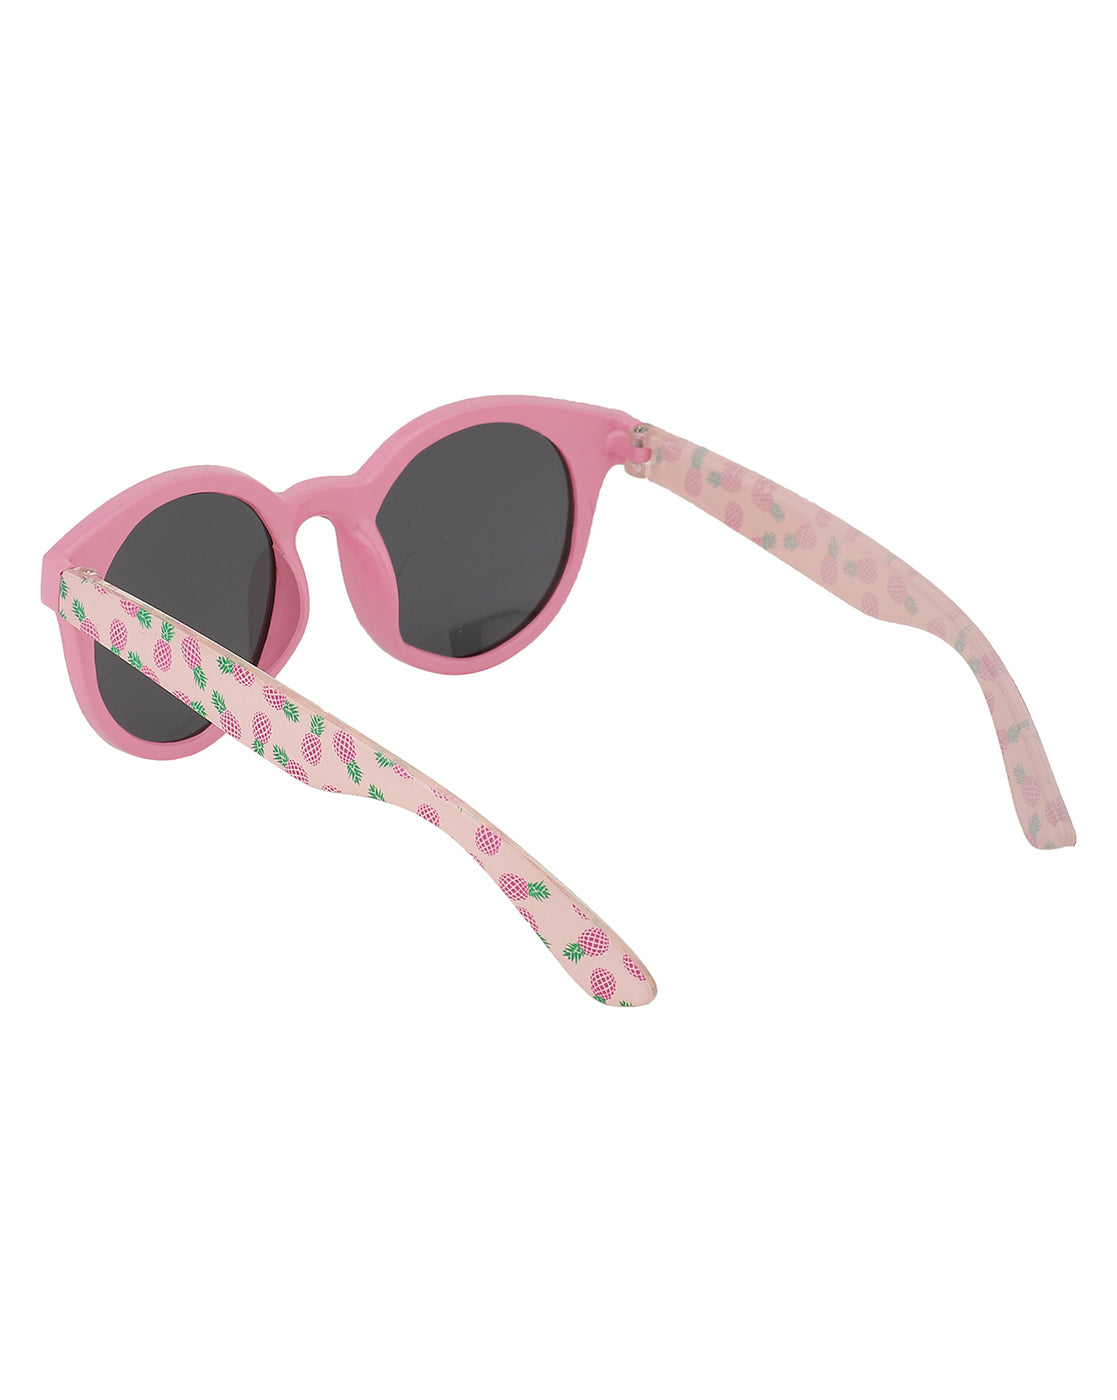 Carlton London Black Lens &amp; Pink Cateye Sunglasses For Girl